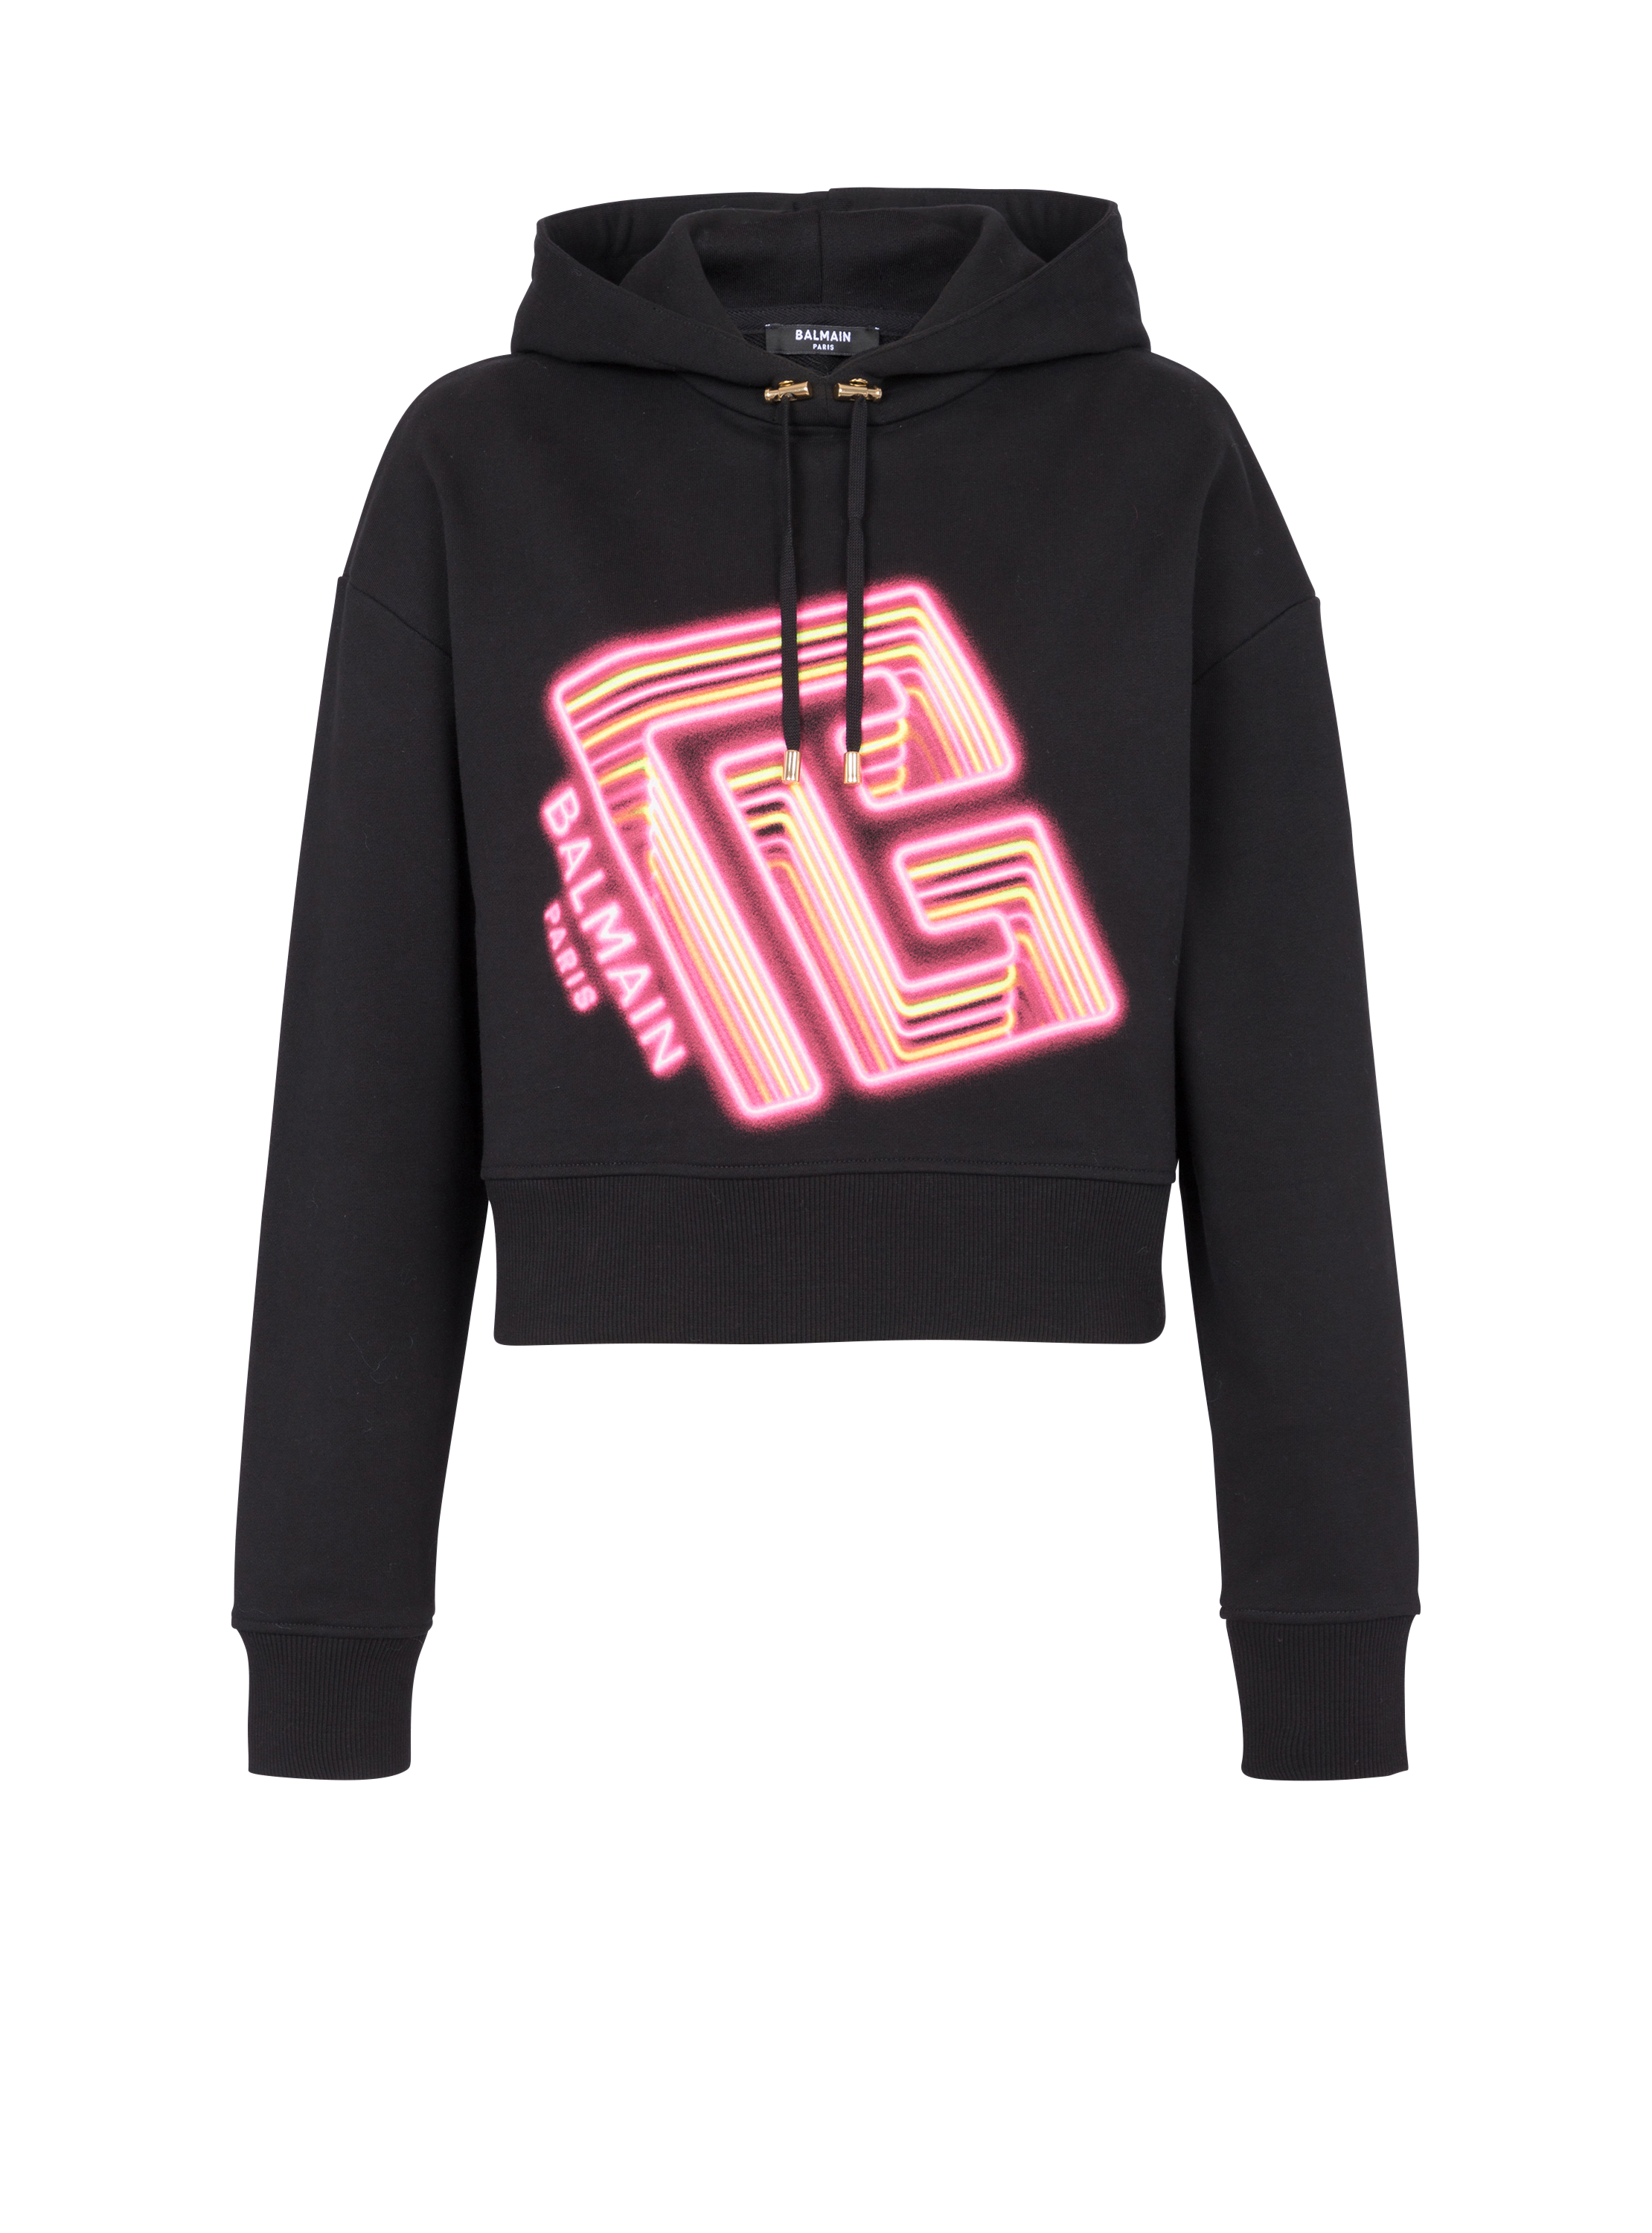 Kurzes Sweatshirt mit Neon-Print, schwarz, hi-res